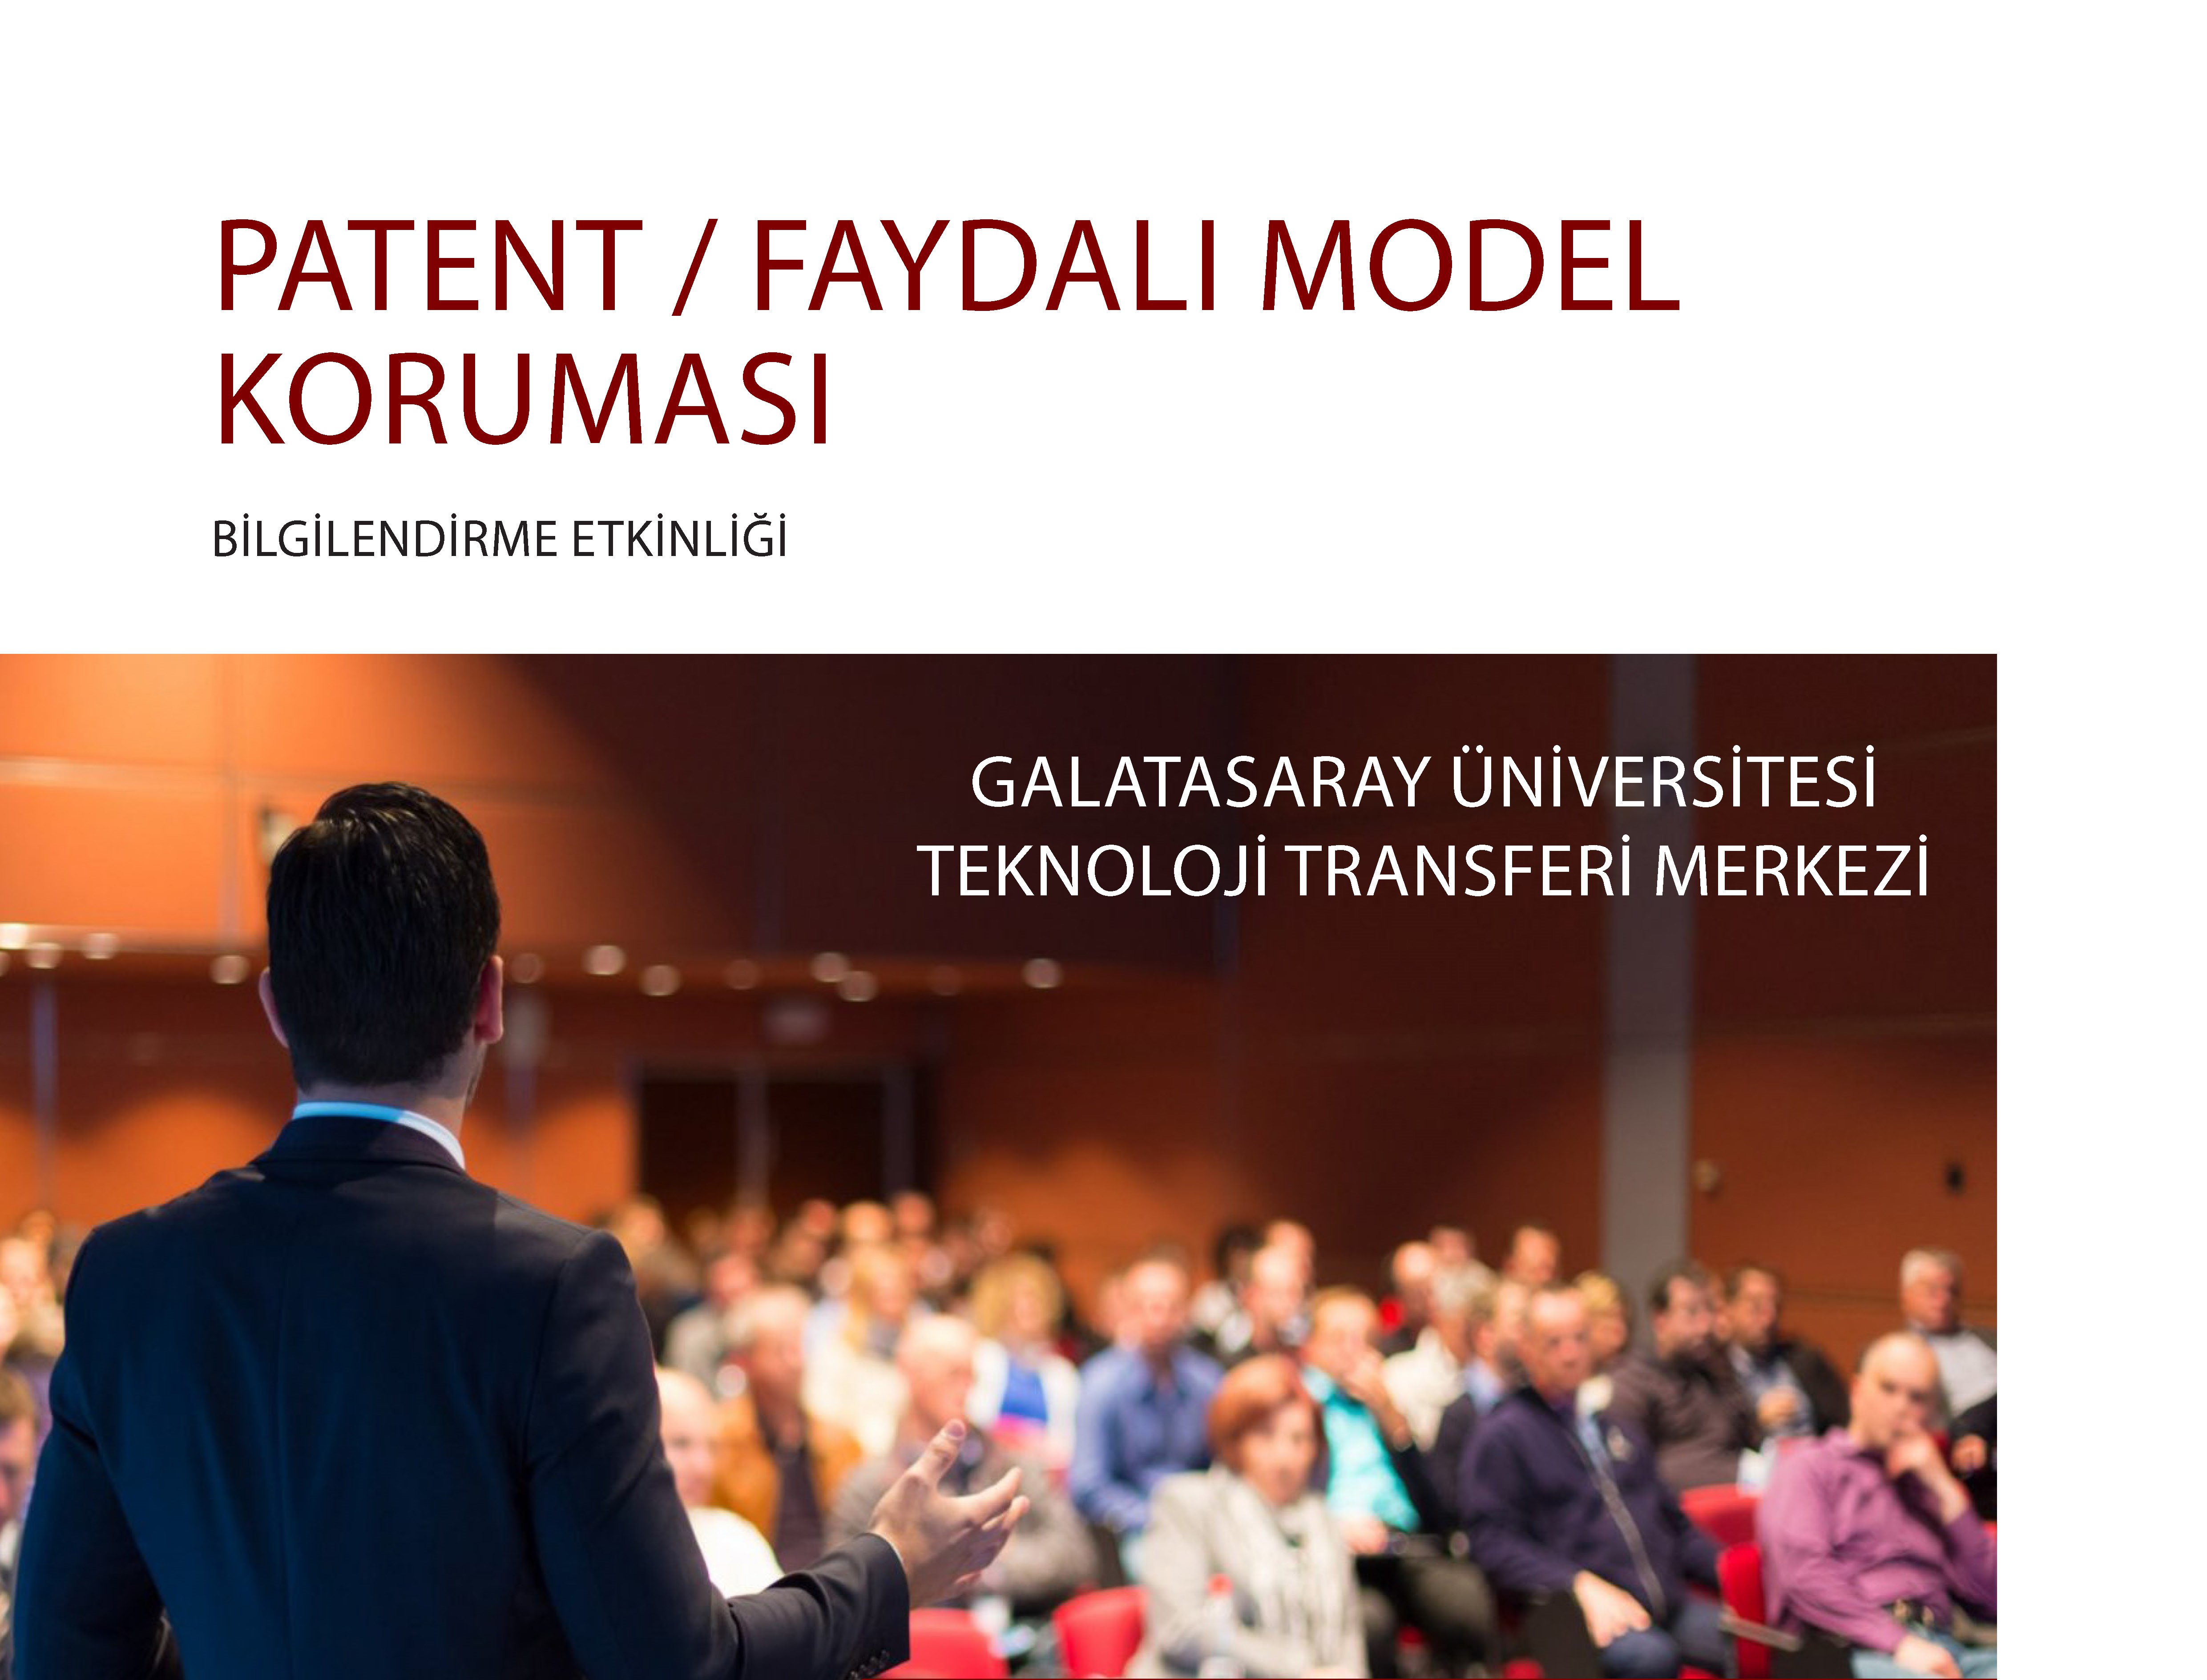 Patent / Faydalı Model Koruması hakkında bilgilendirme toplantısı  duyuru görseli